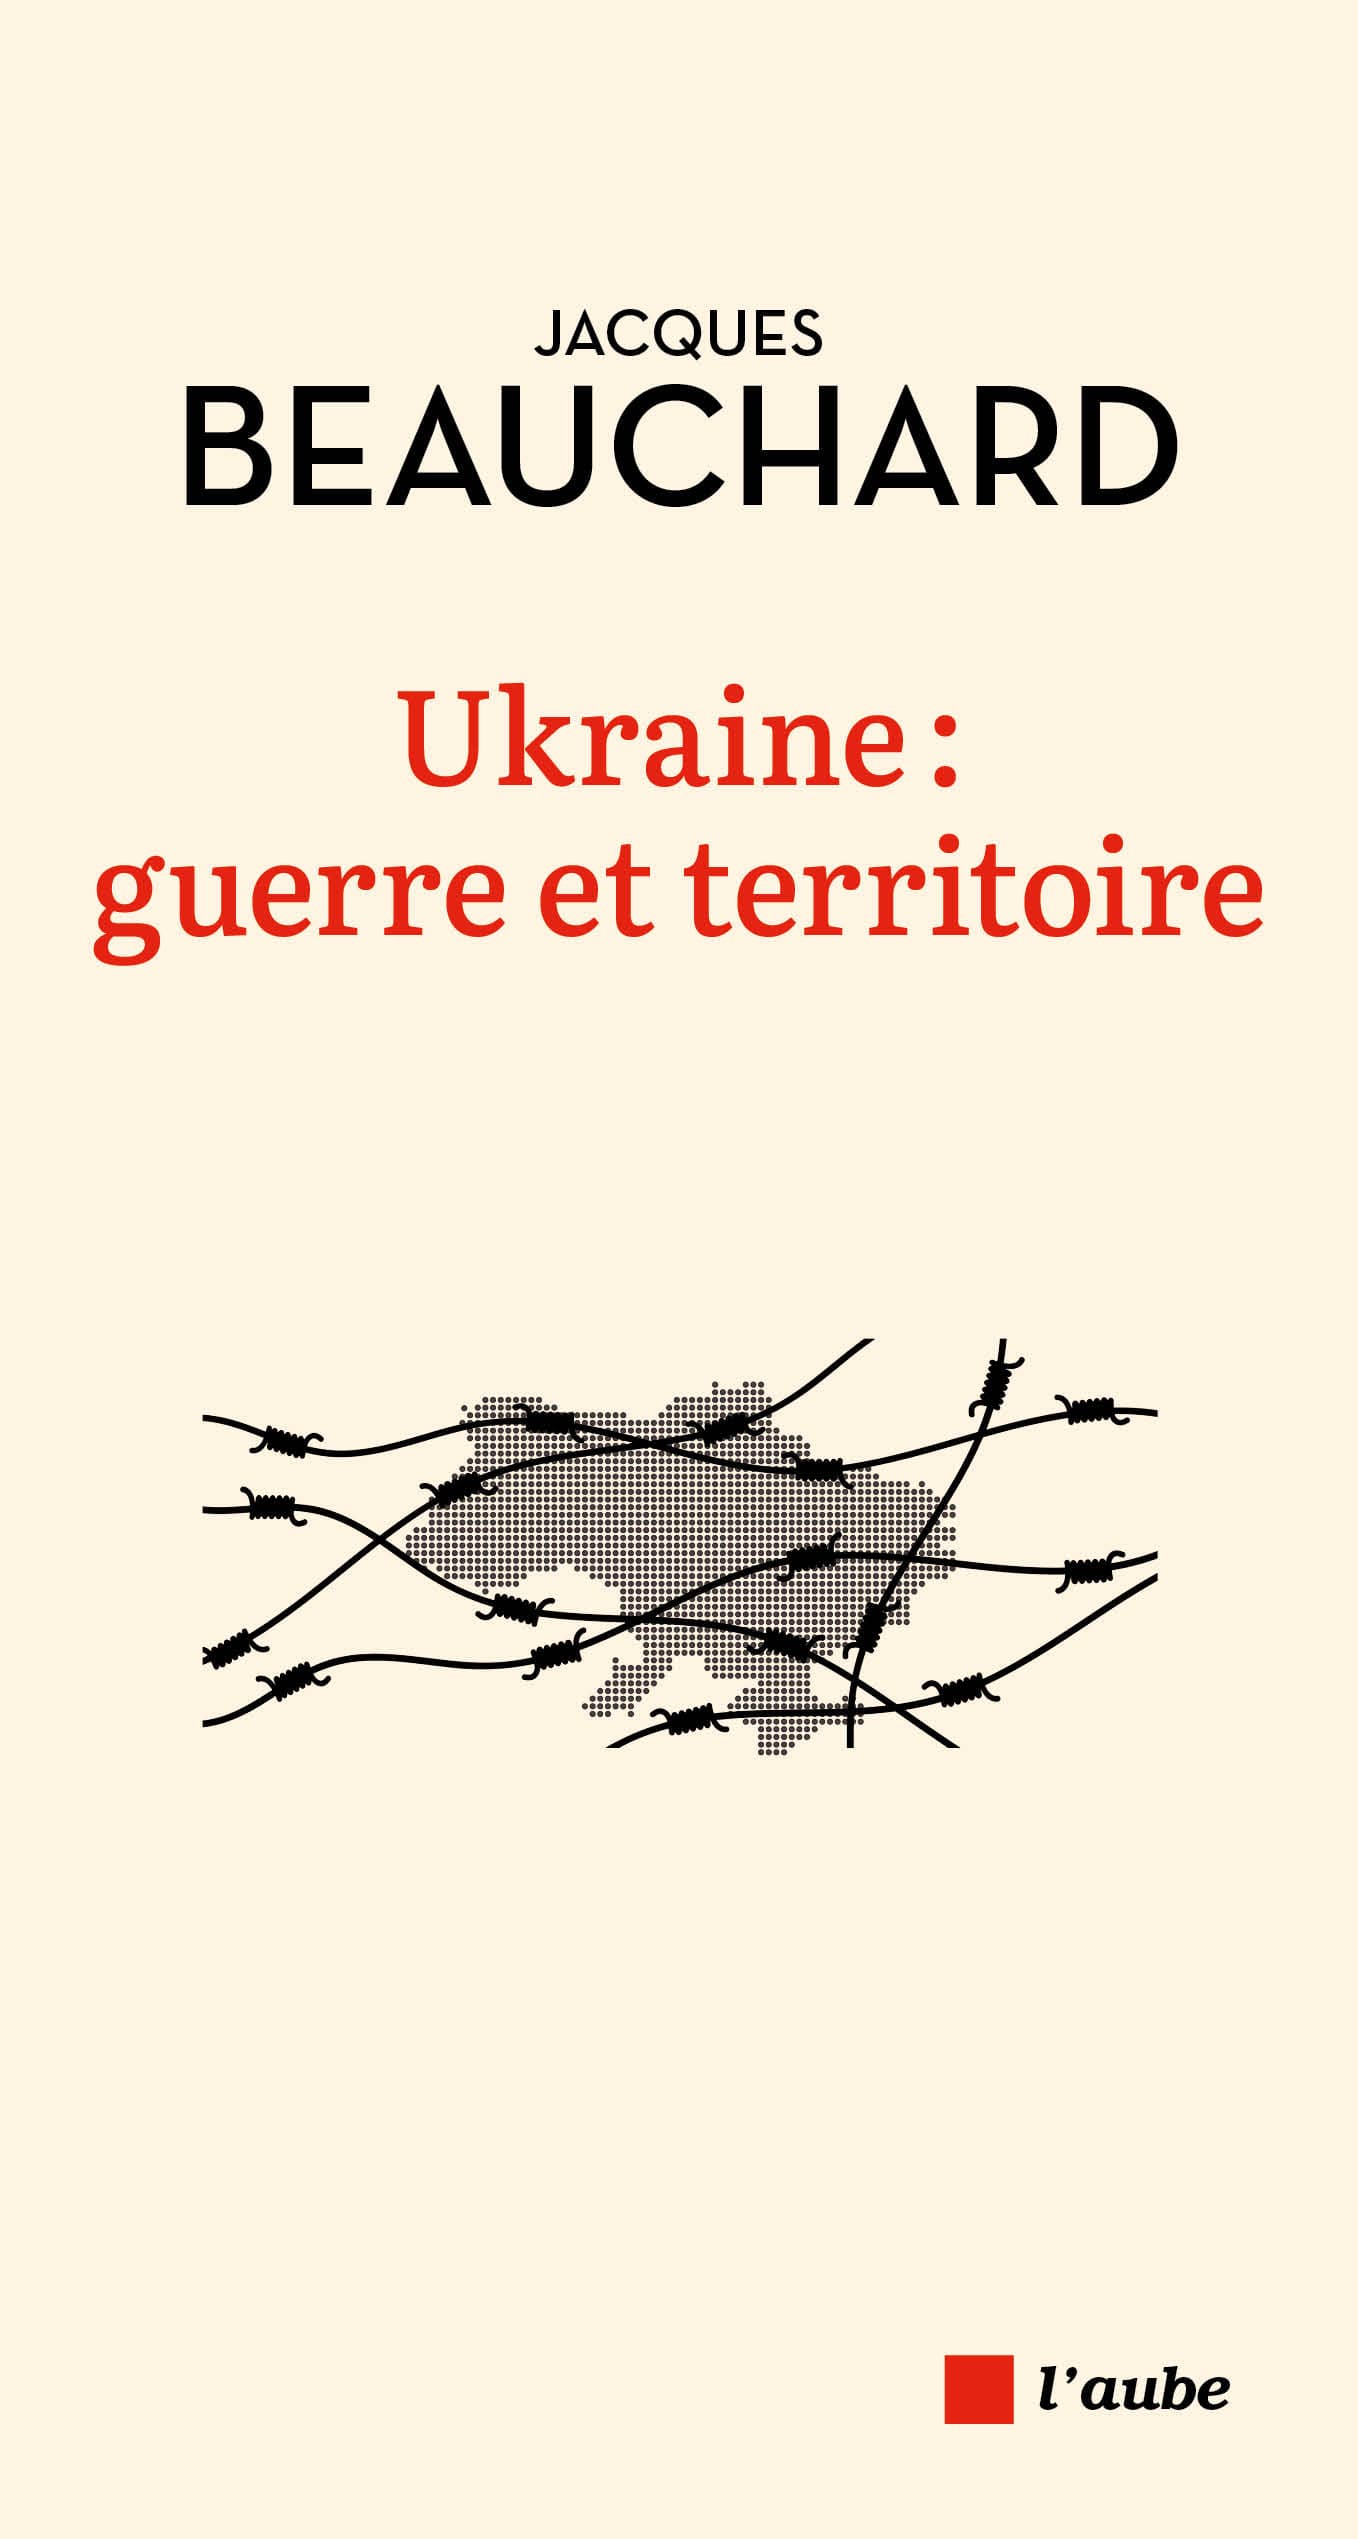 Couverture écrue, en haut, au centre, le nom de l'auteur, sur deux lignes en caractères noirs, ceux du nom plus gras que ceux du prénom. En-dessous, sur deux lignes également, le titre en rouge, centré. Au centre de la couverture, une silhouette de l'Ukraine, grisée, en partie masquée par des barbelés.